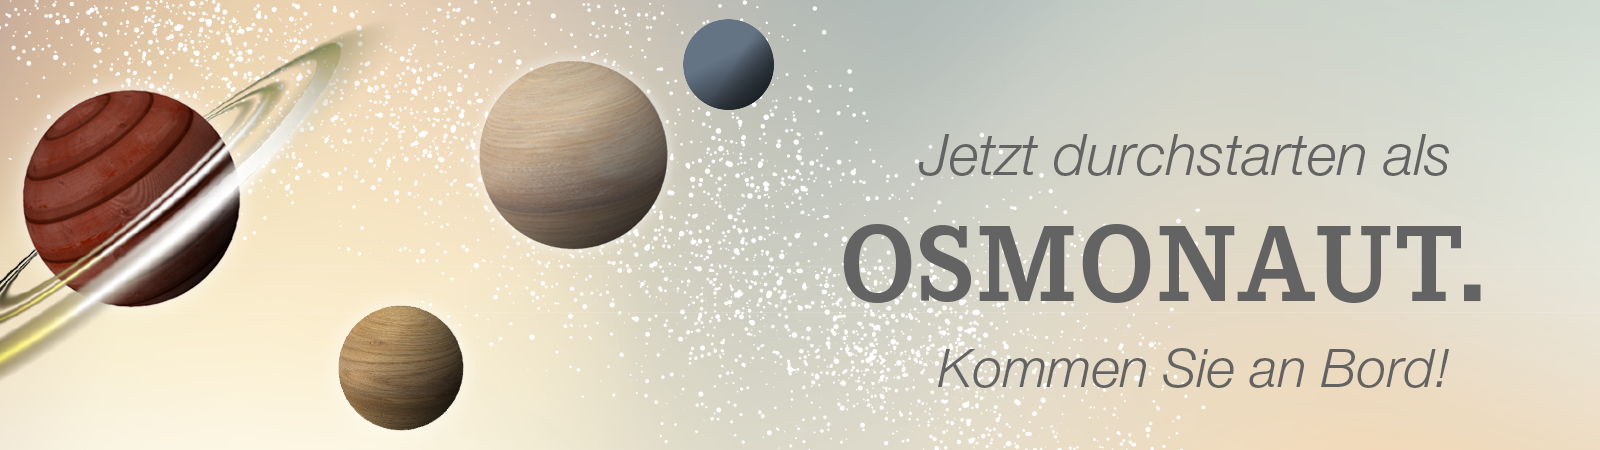 Bewerben Sie sich bei Osmo und werden Sie Osmonaut! Oder besuchen Sie uns auf der Jobmesse.